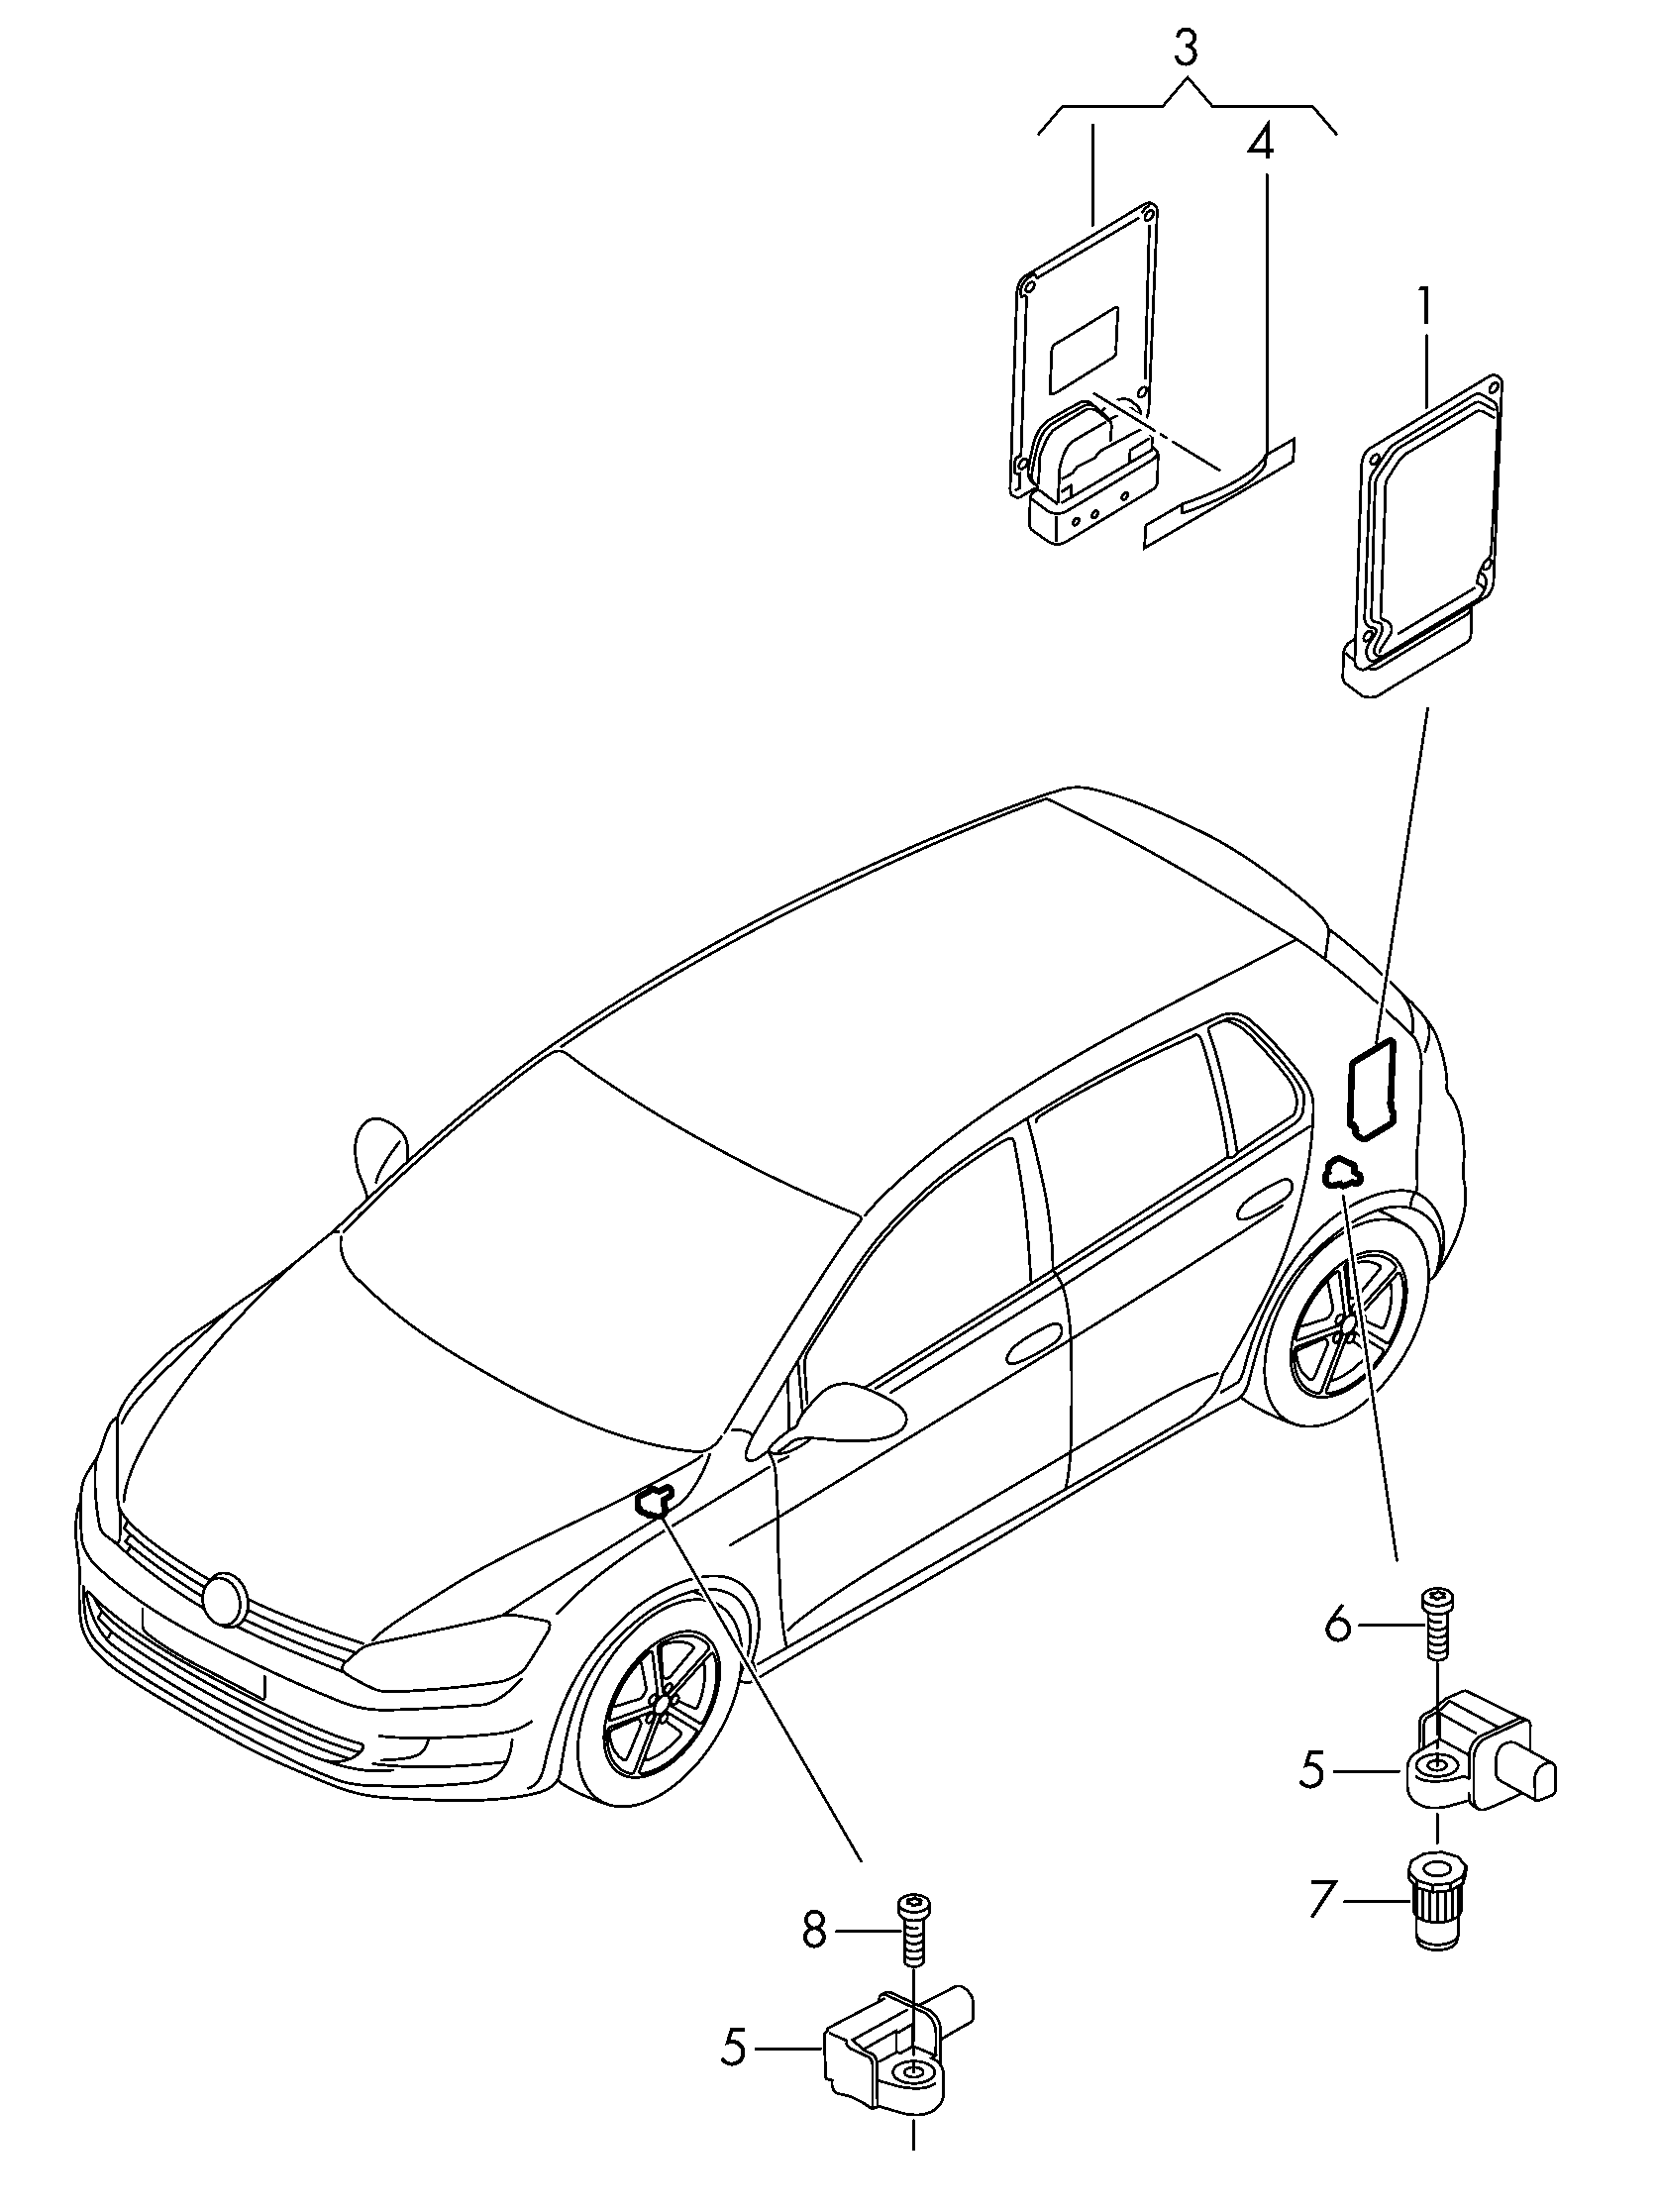 Hızlanma sensörü  - Golf/Variant/4Motion - golf